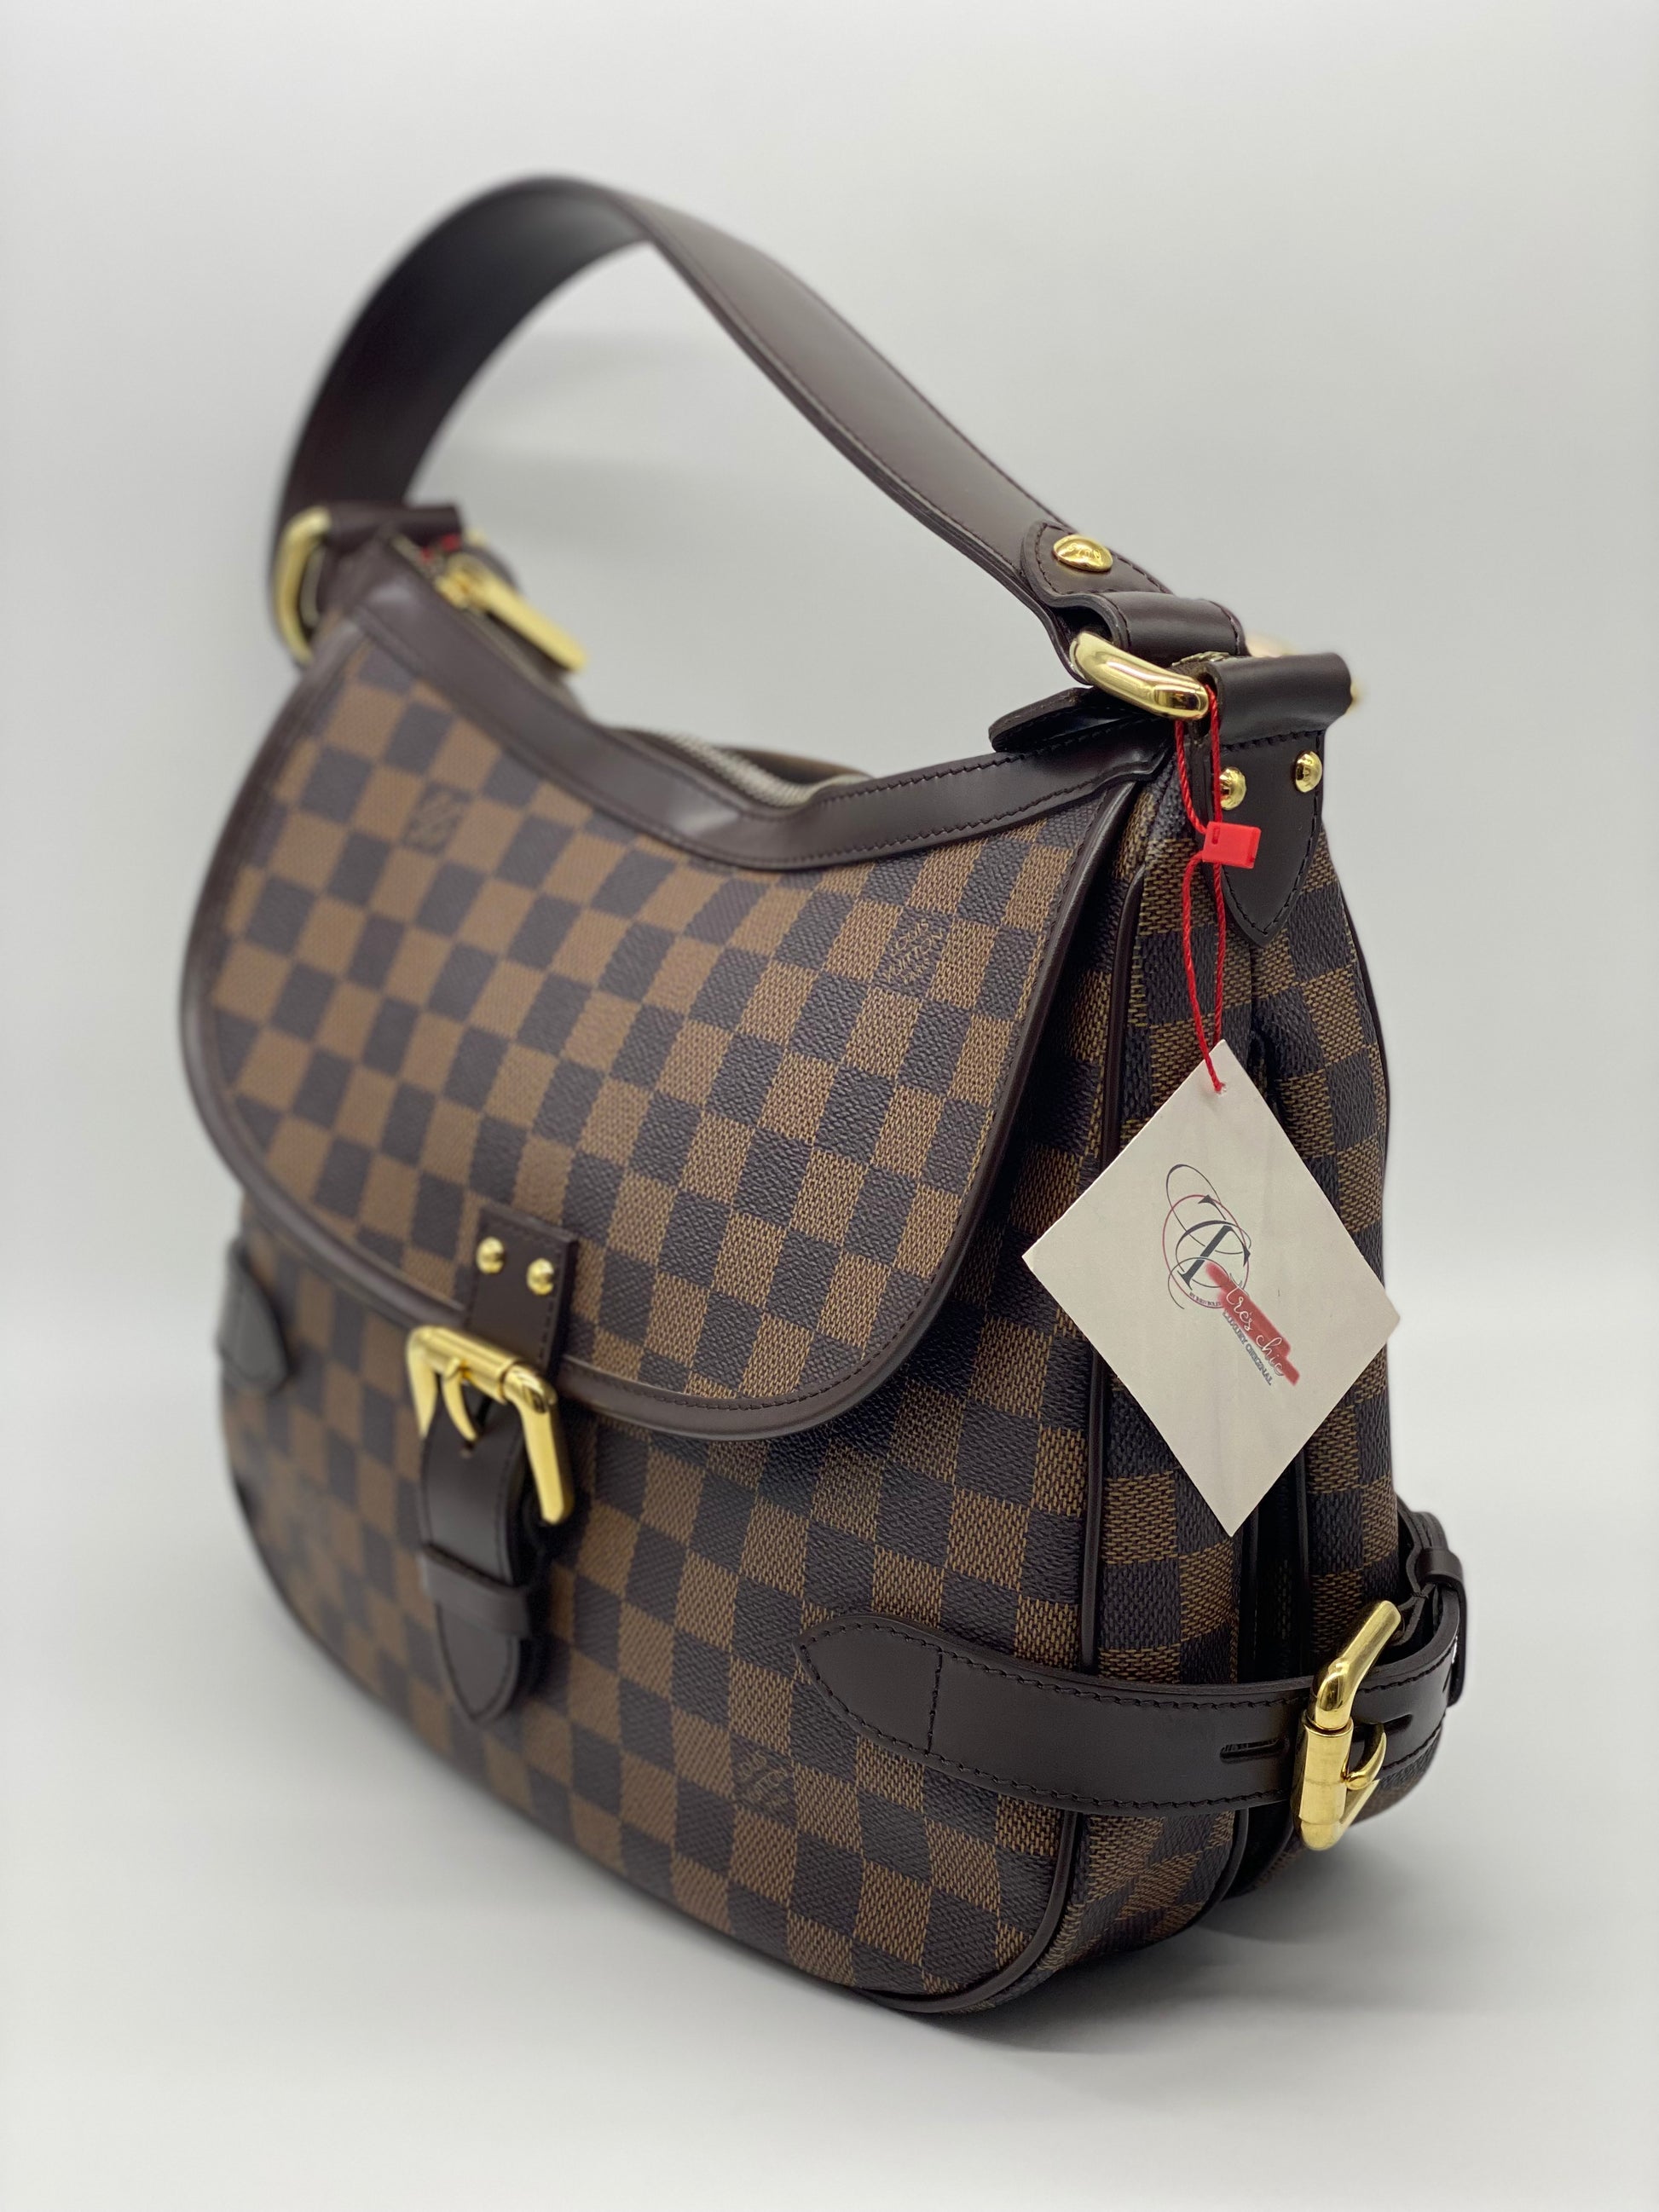 Louis Vuitton Highbury Damier Ebene Hobo Bag on SALE